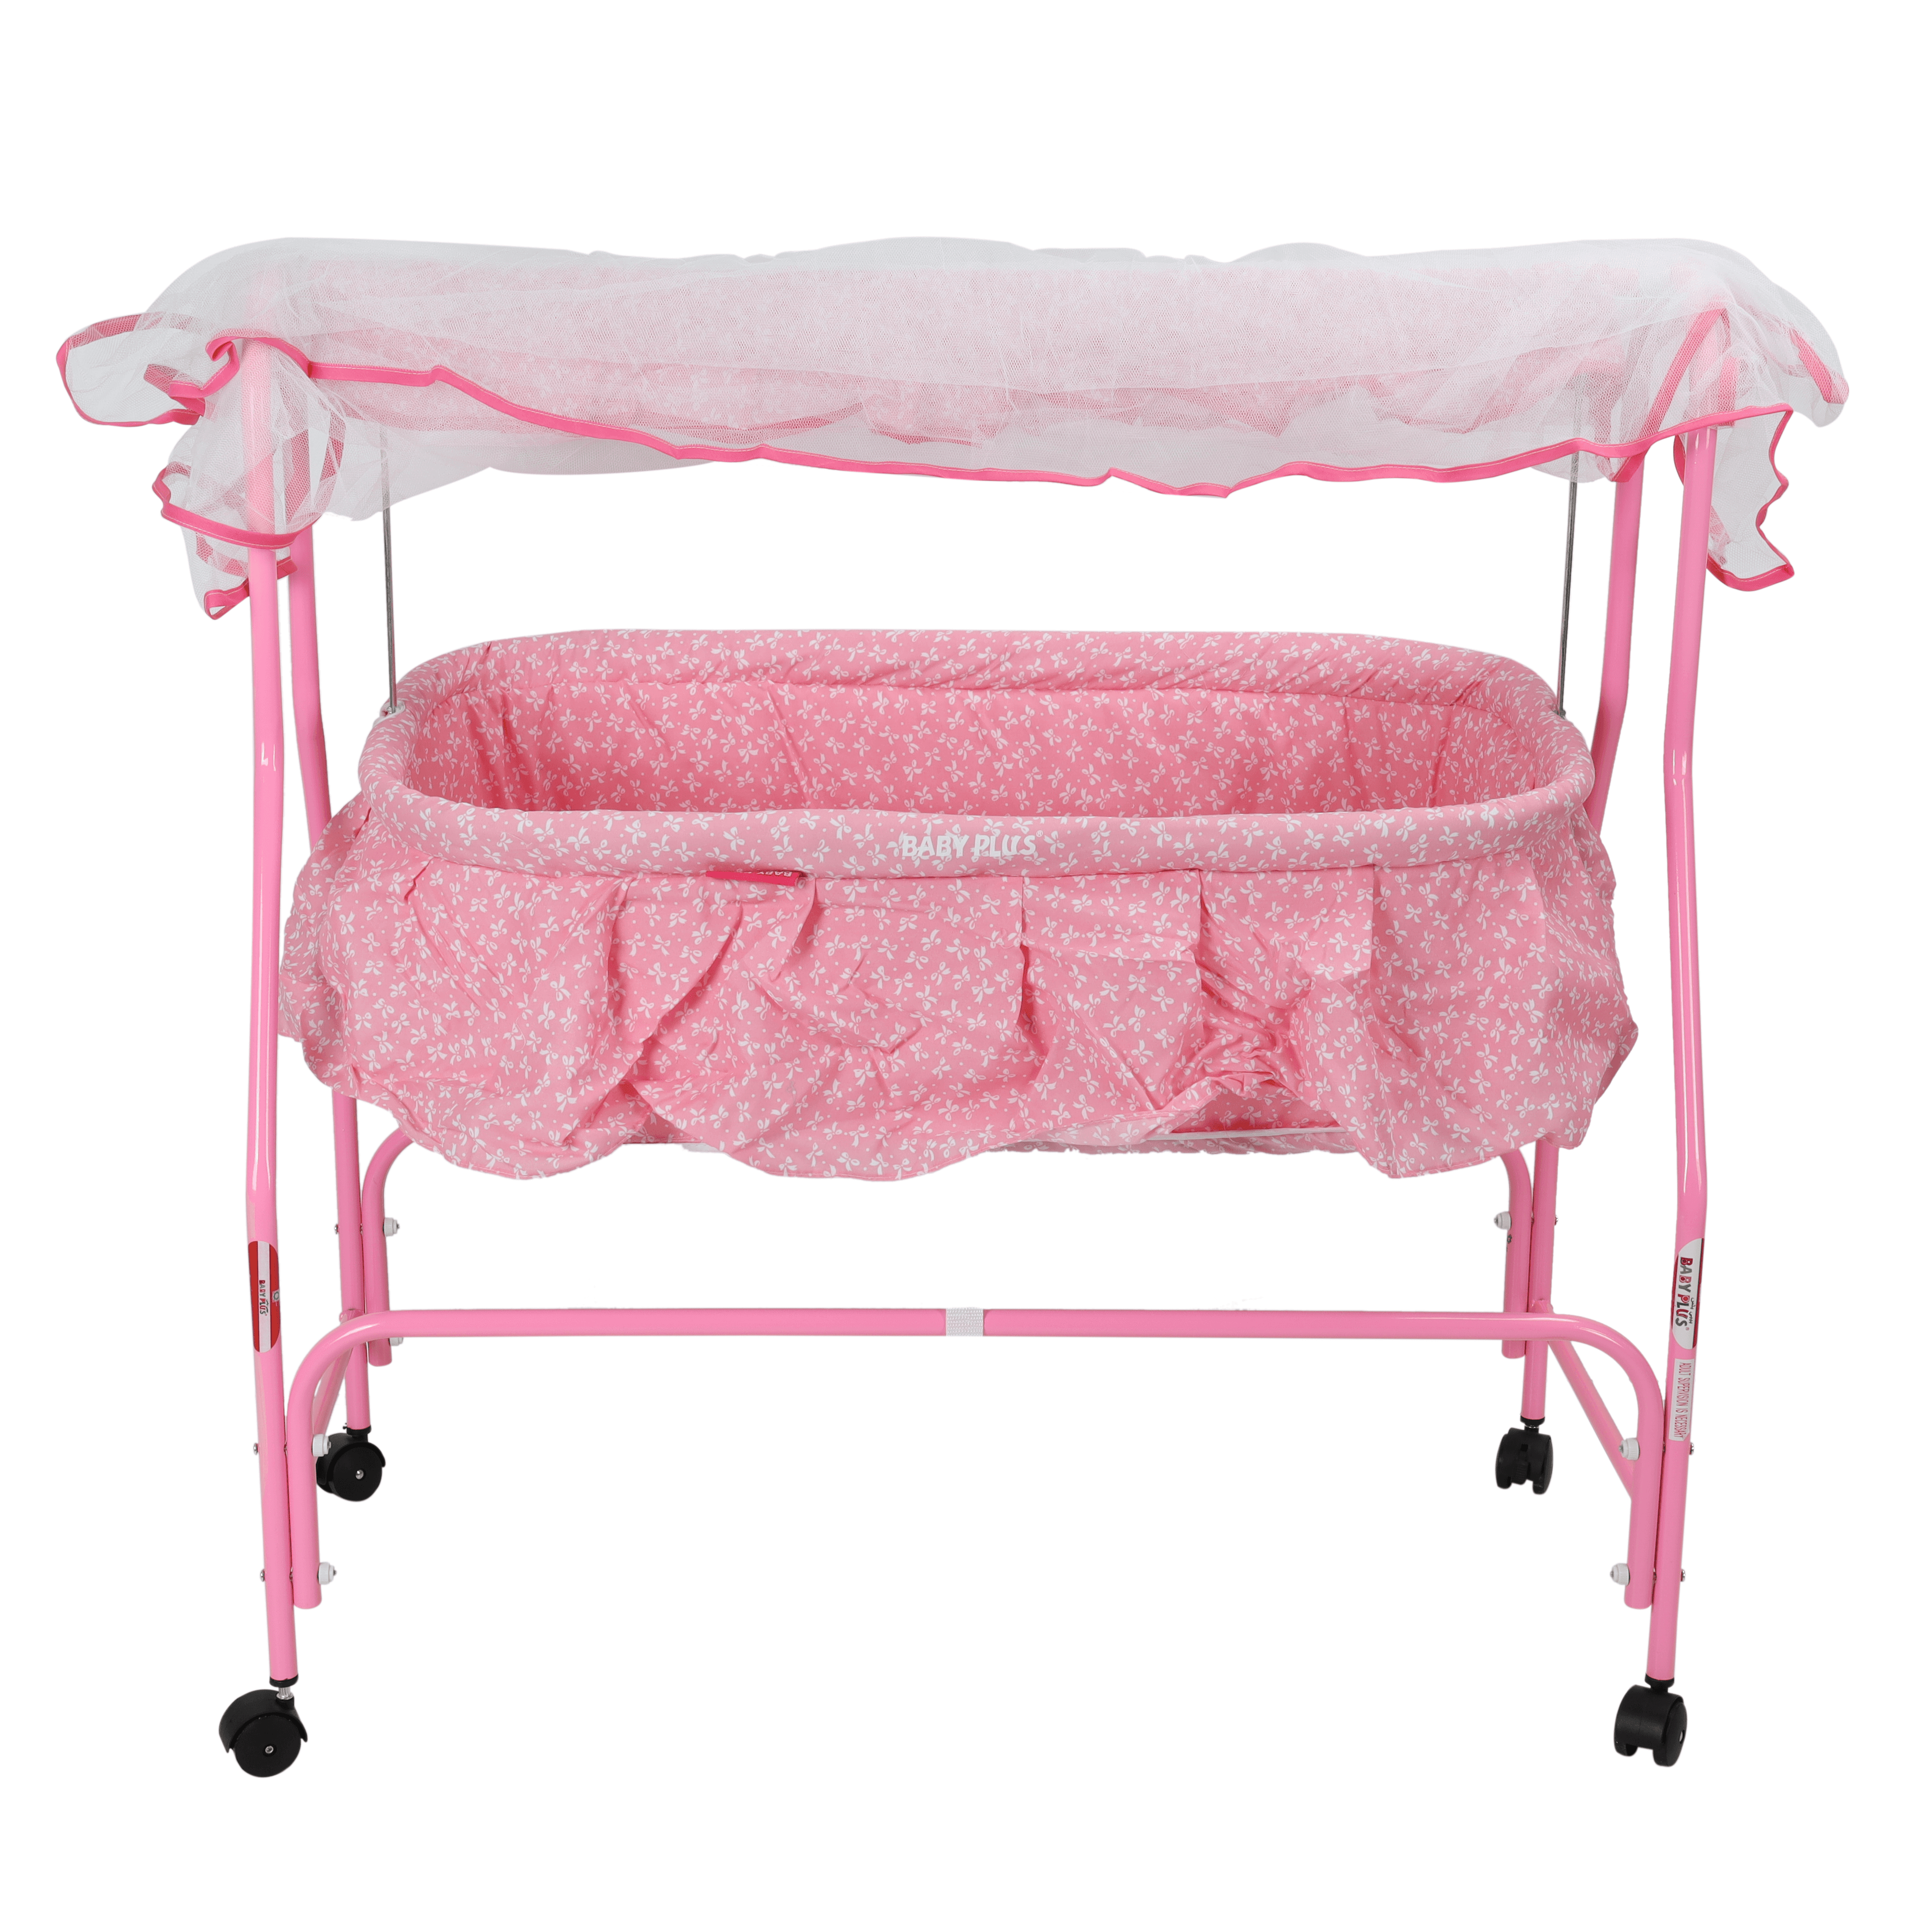 سرير للأطفال هزاز مع ناموسية زهري Baby Cradle With Swing - Baby Plus